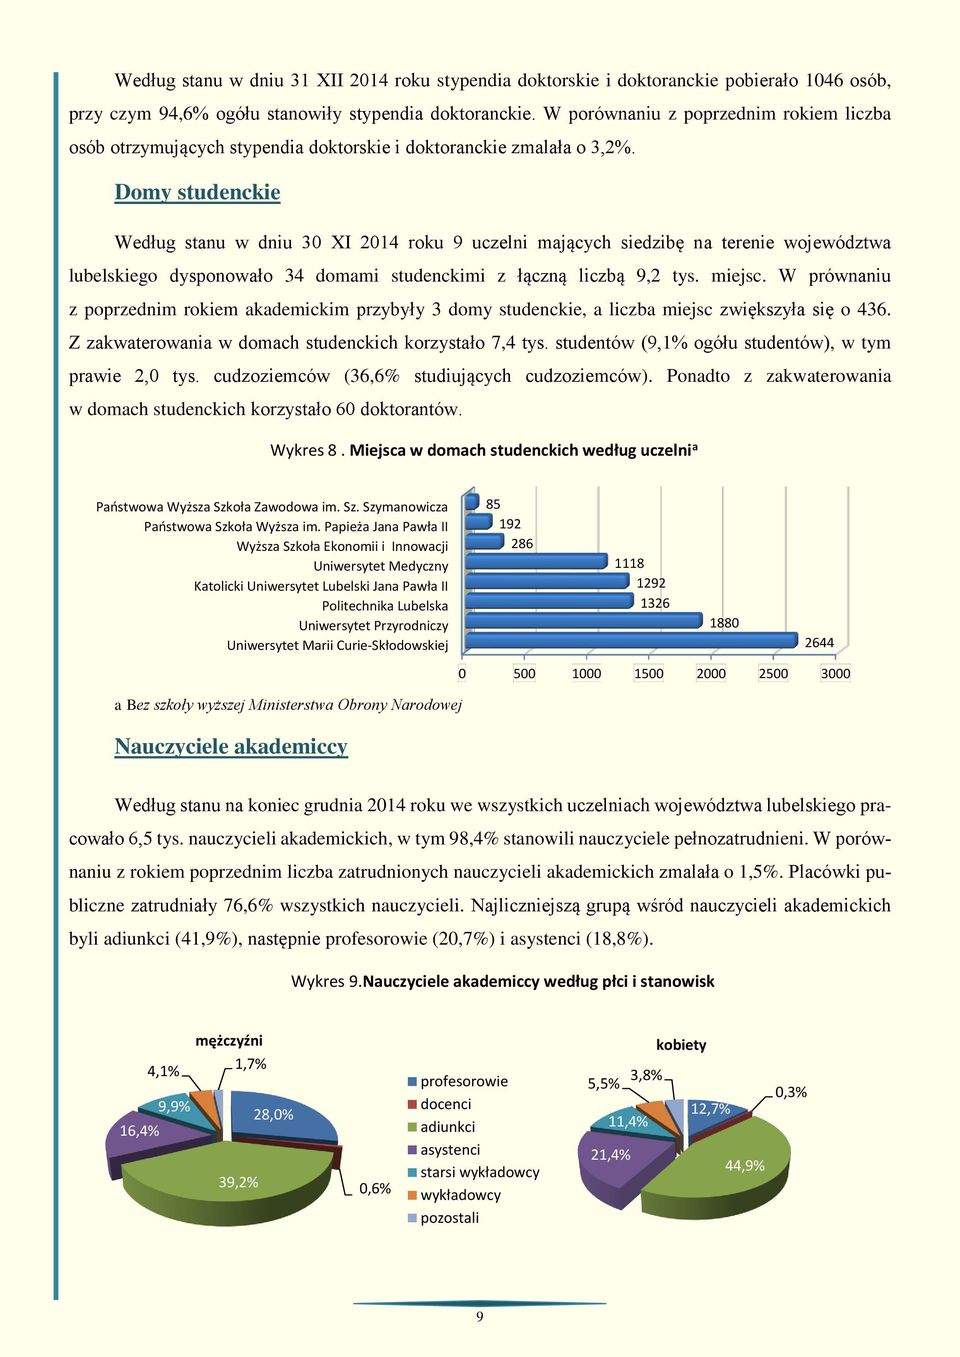 Domy studenckie Według stanu w dniu 30 XI 2014 roku 9 uczelni mających siedzibę na terenie województwa lubelskiego dysponowało 34 domami studenckimi z łączną liczbą 9,2 tys. miejsc.